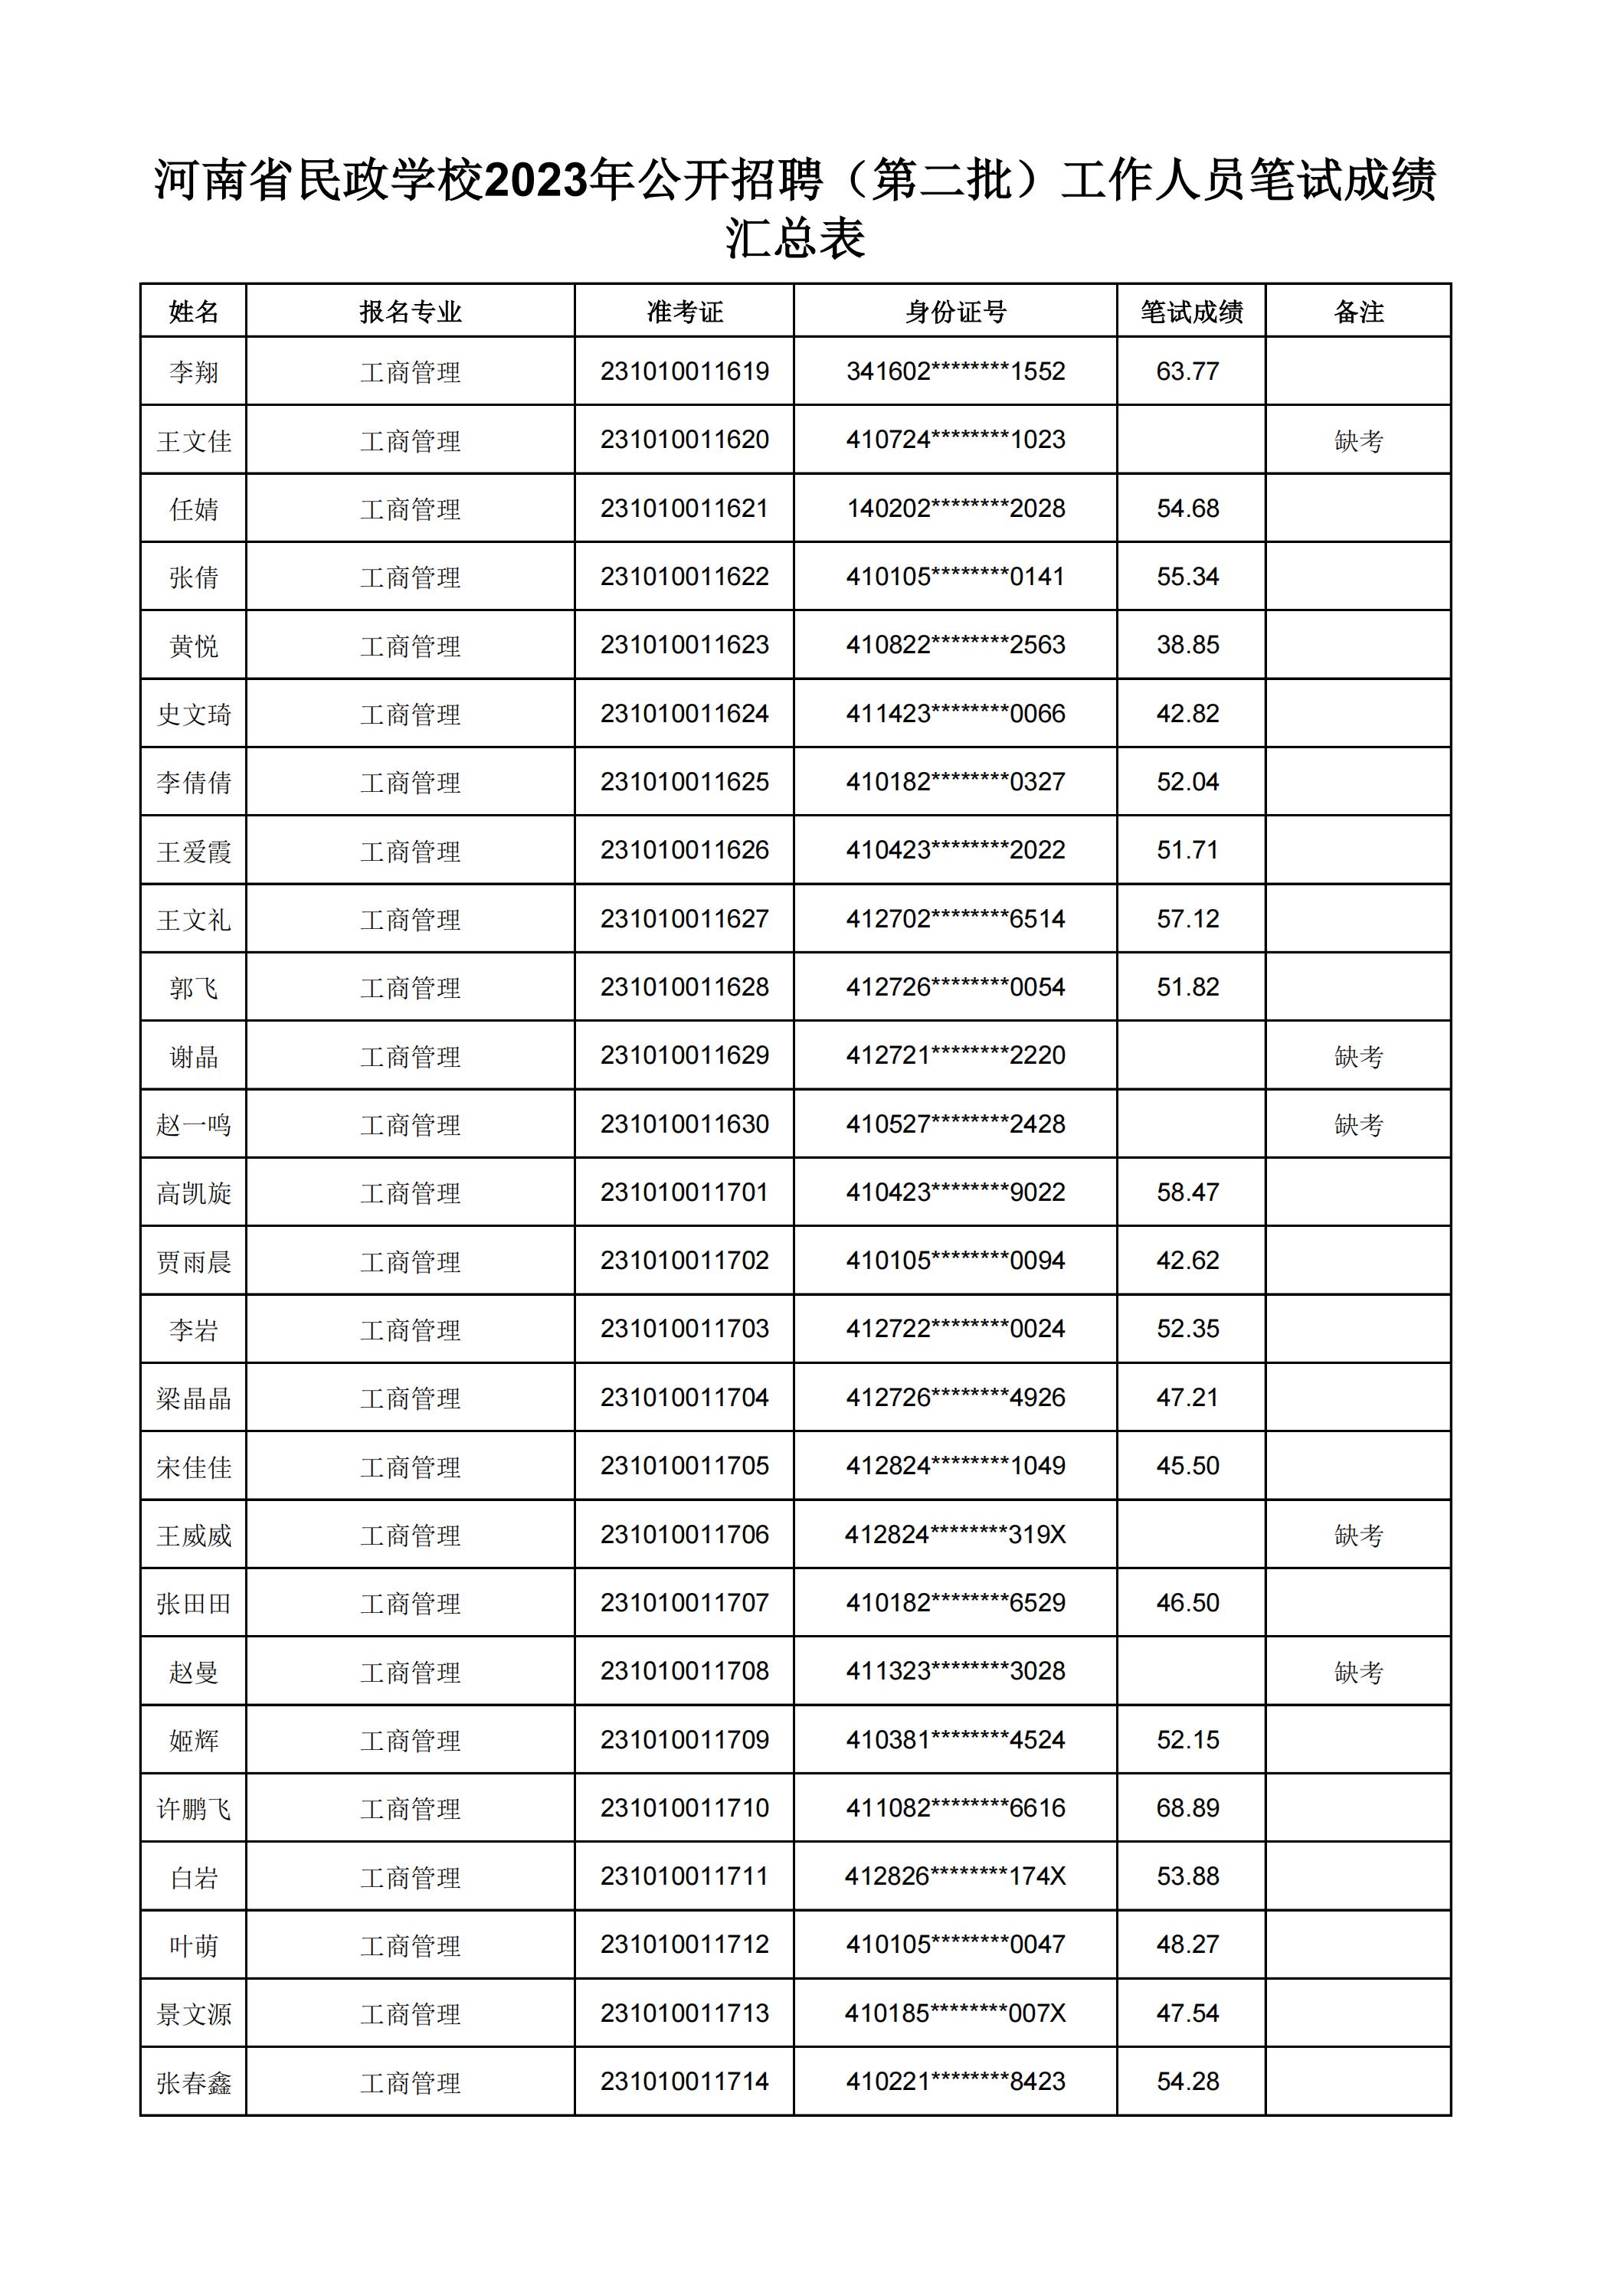 河南省民政学校2023年公开招聘（第二批）工作人员笔试成绩汇总表(2)_18.jpg